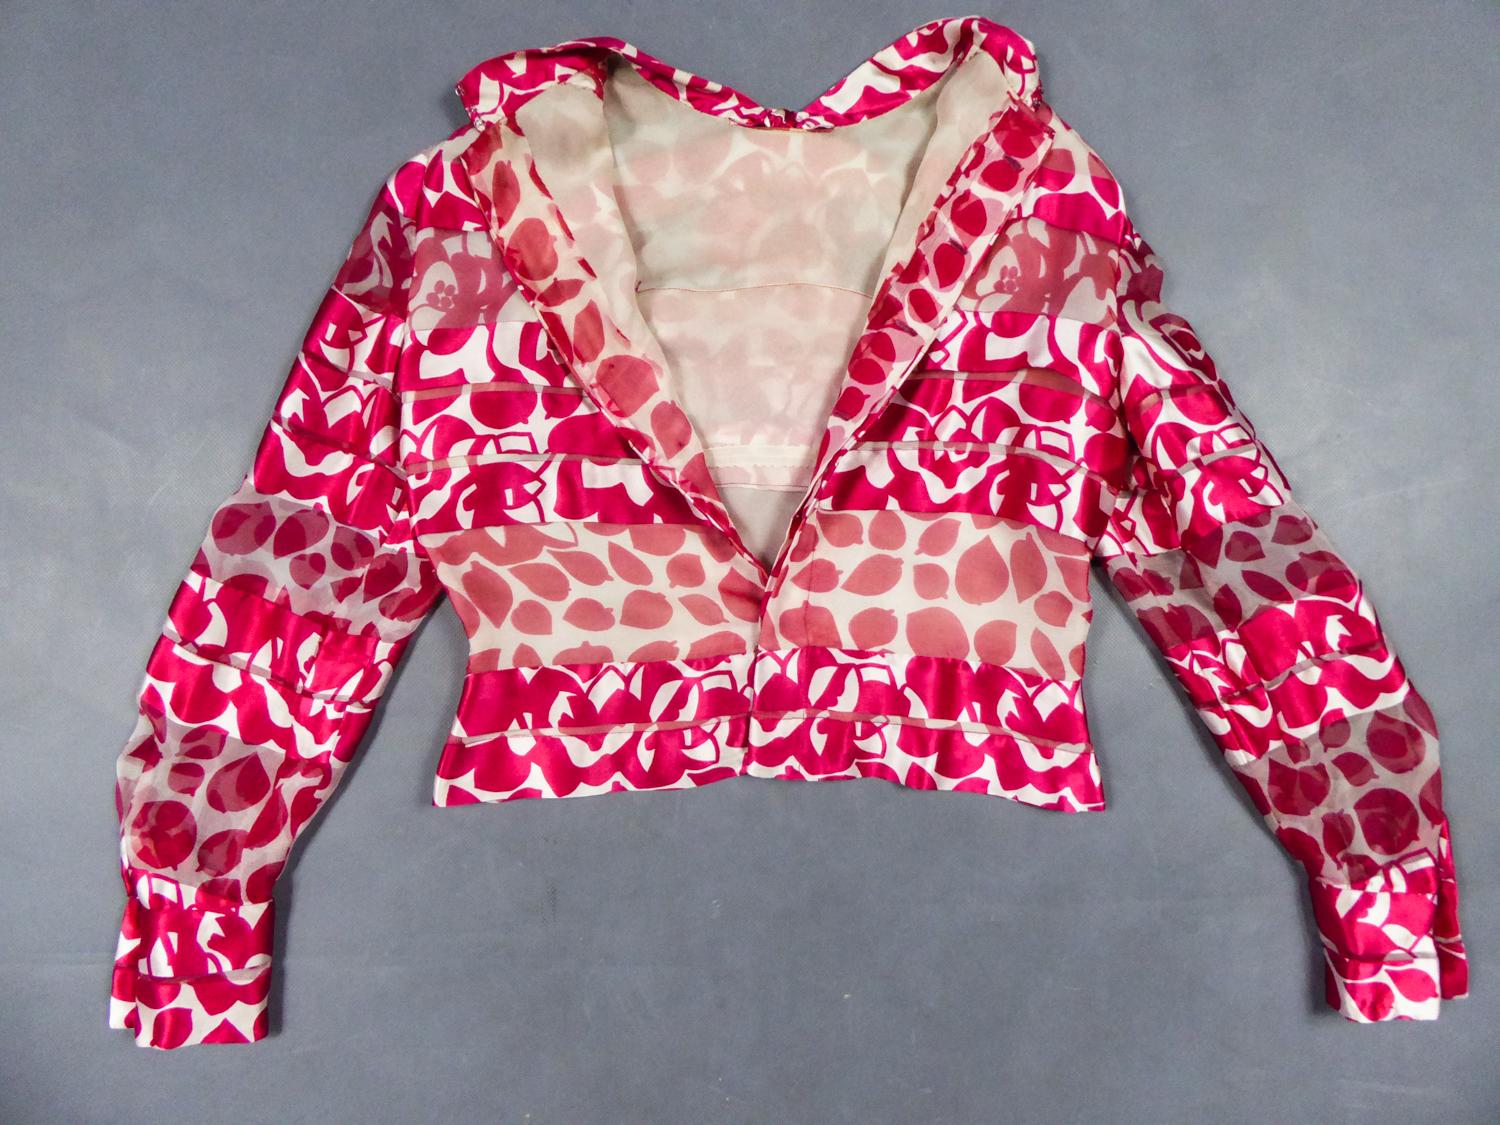 Circa 1971
France

Rare blouse courte Chanel Haute Couture en soie imprimée, datant probablement de la fin de la période Gabrielle Chanel, décédée en 1971. Superbe pekin de soie alternant crêpe translucide et bandes de satin. Impression de fleurs